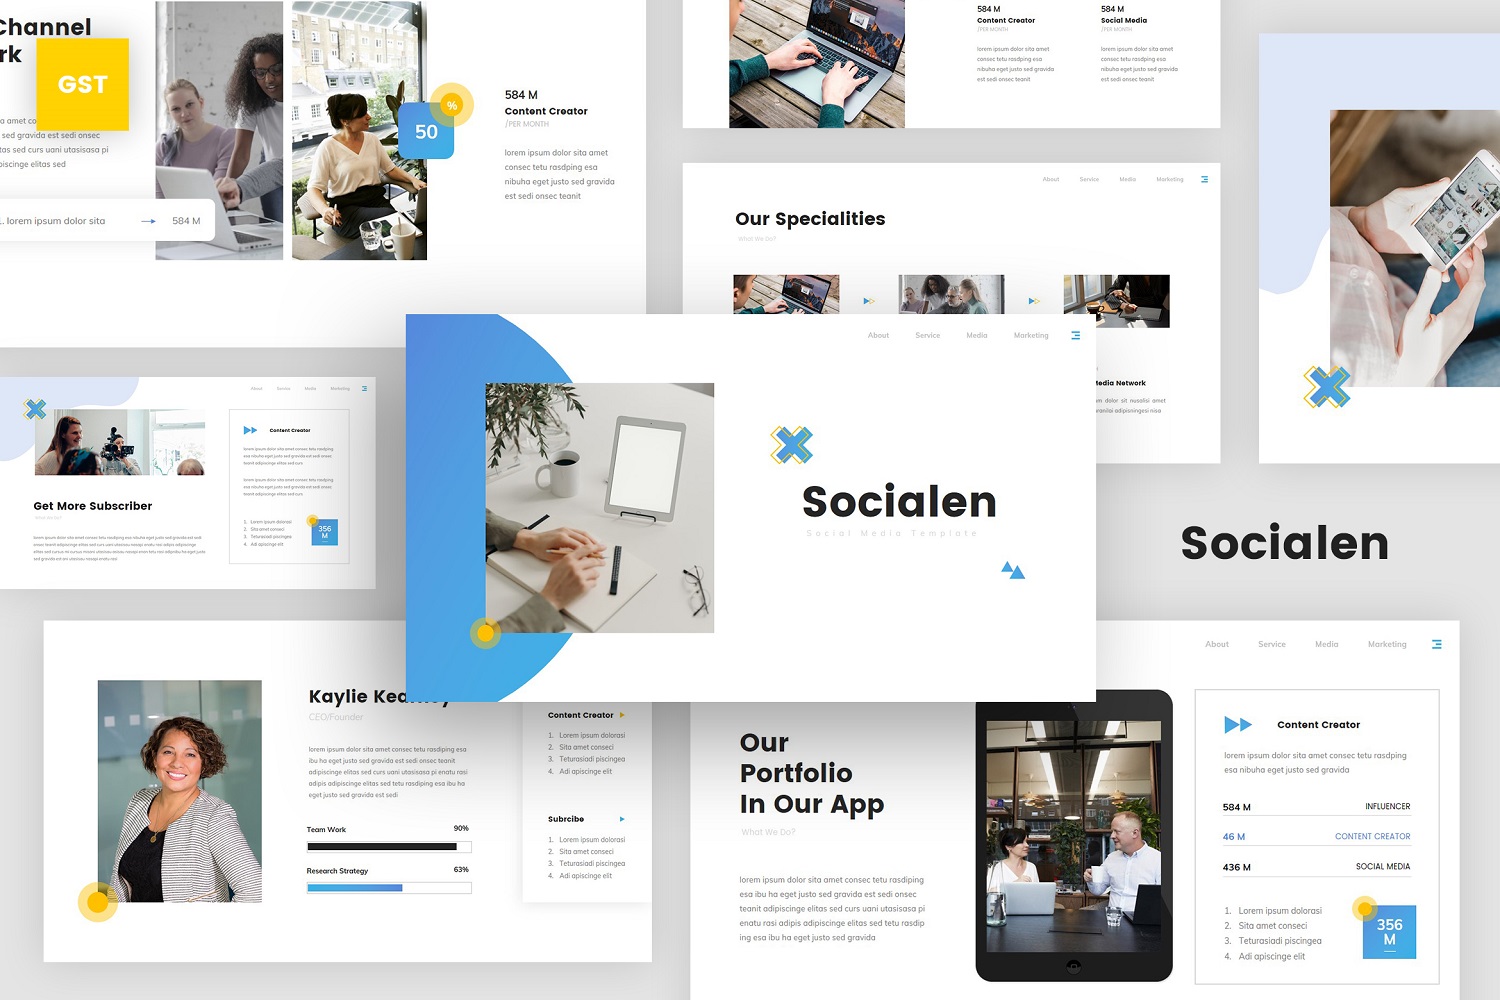 Socialen - Social Media Marketing Google Slides Template